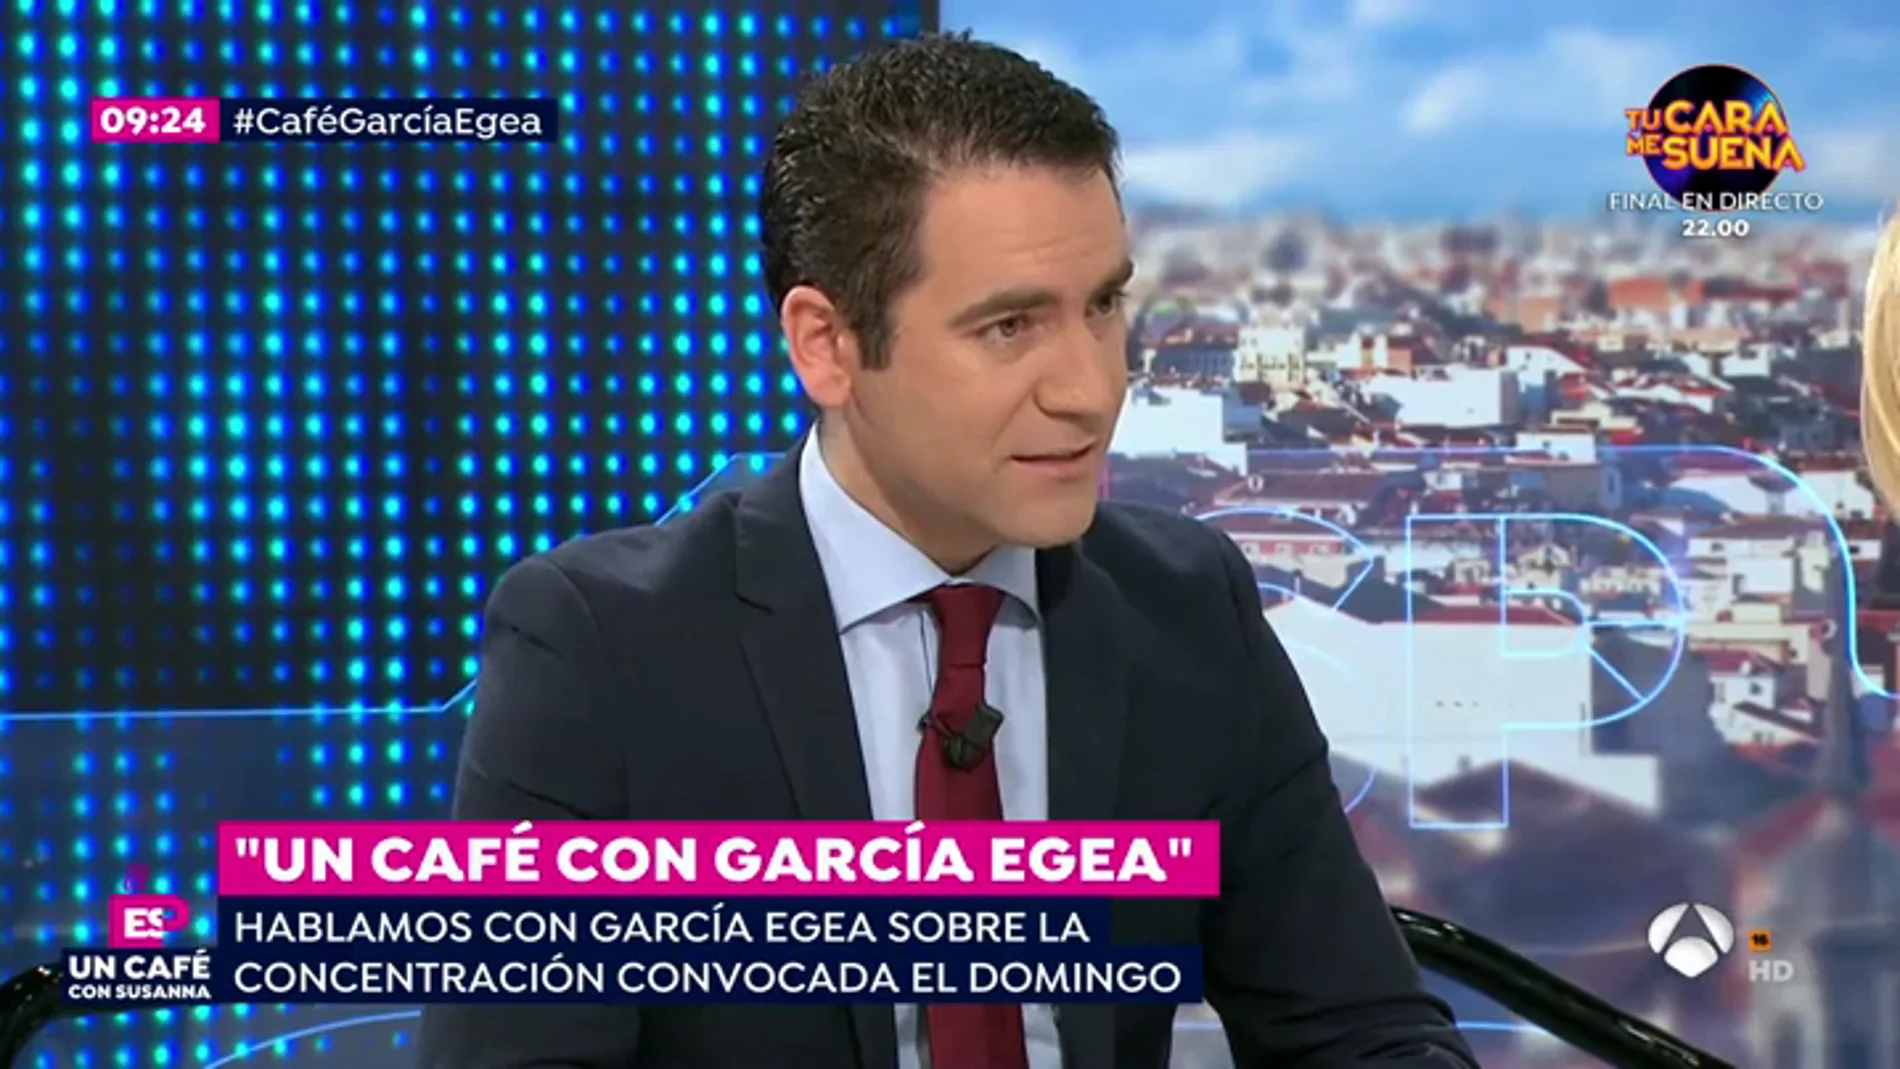 Teodoro García Egea: "Todos somos iguales ante la ley y el único relator posible es la Constitución"